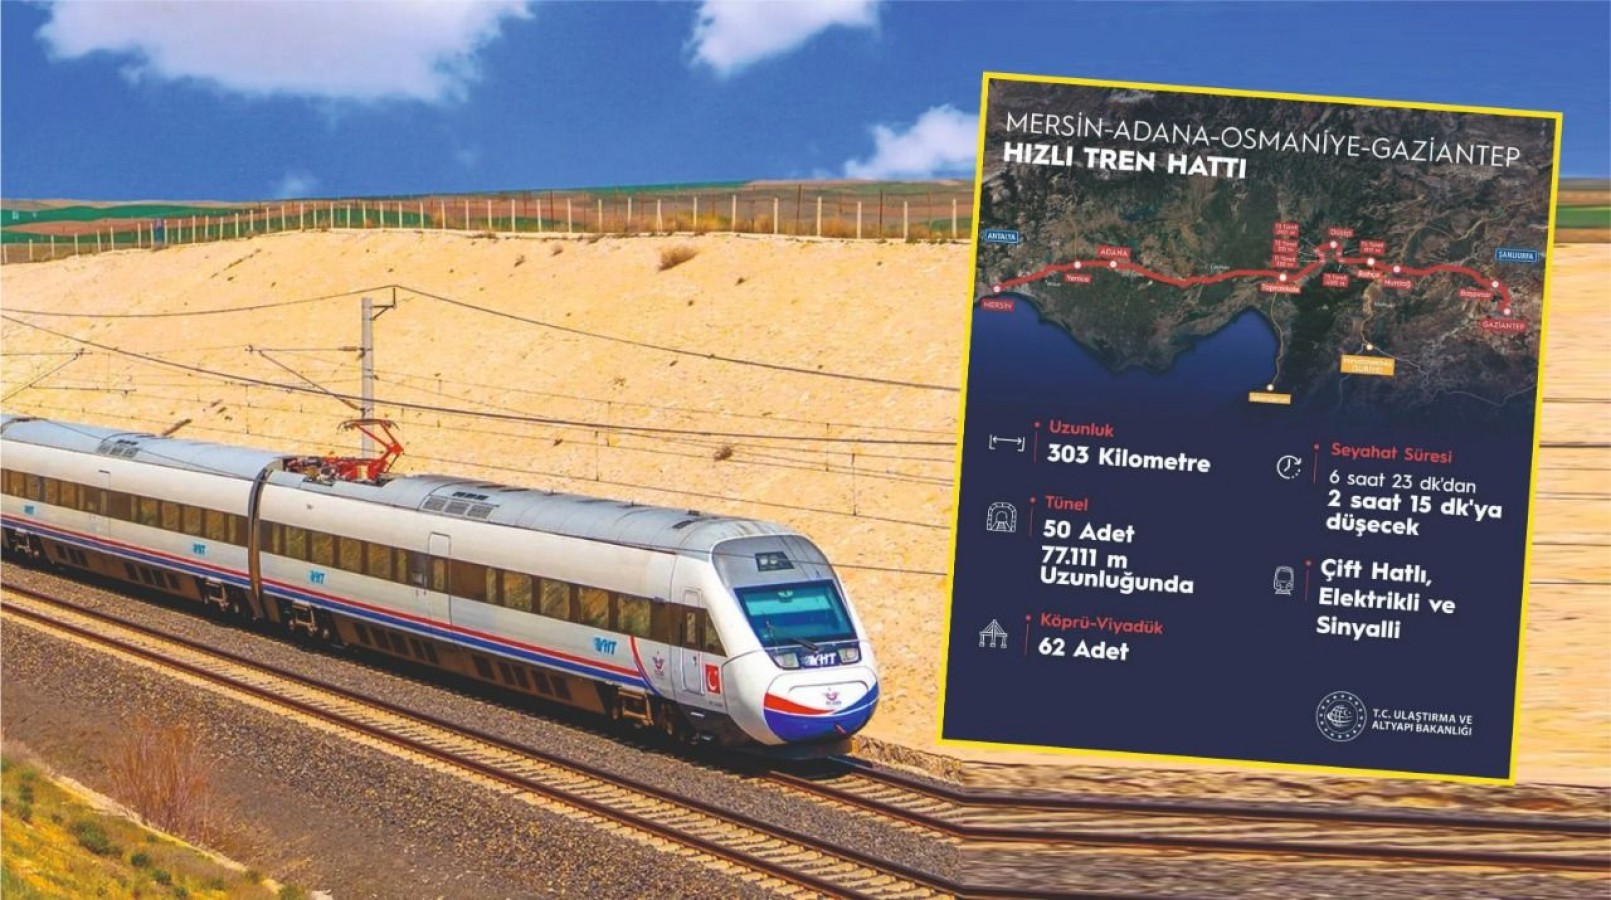 Urfa'da Muhalefet Soruyor Hızlı Tren Vaadi Boşa mı Çıktı?;